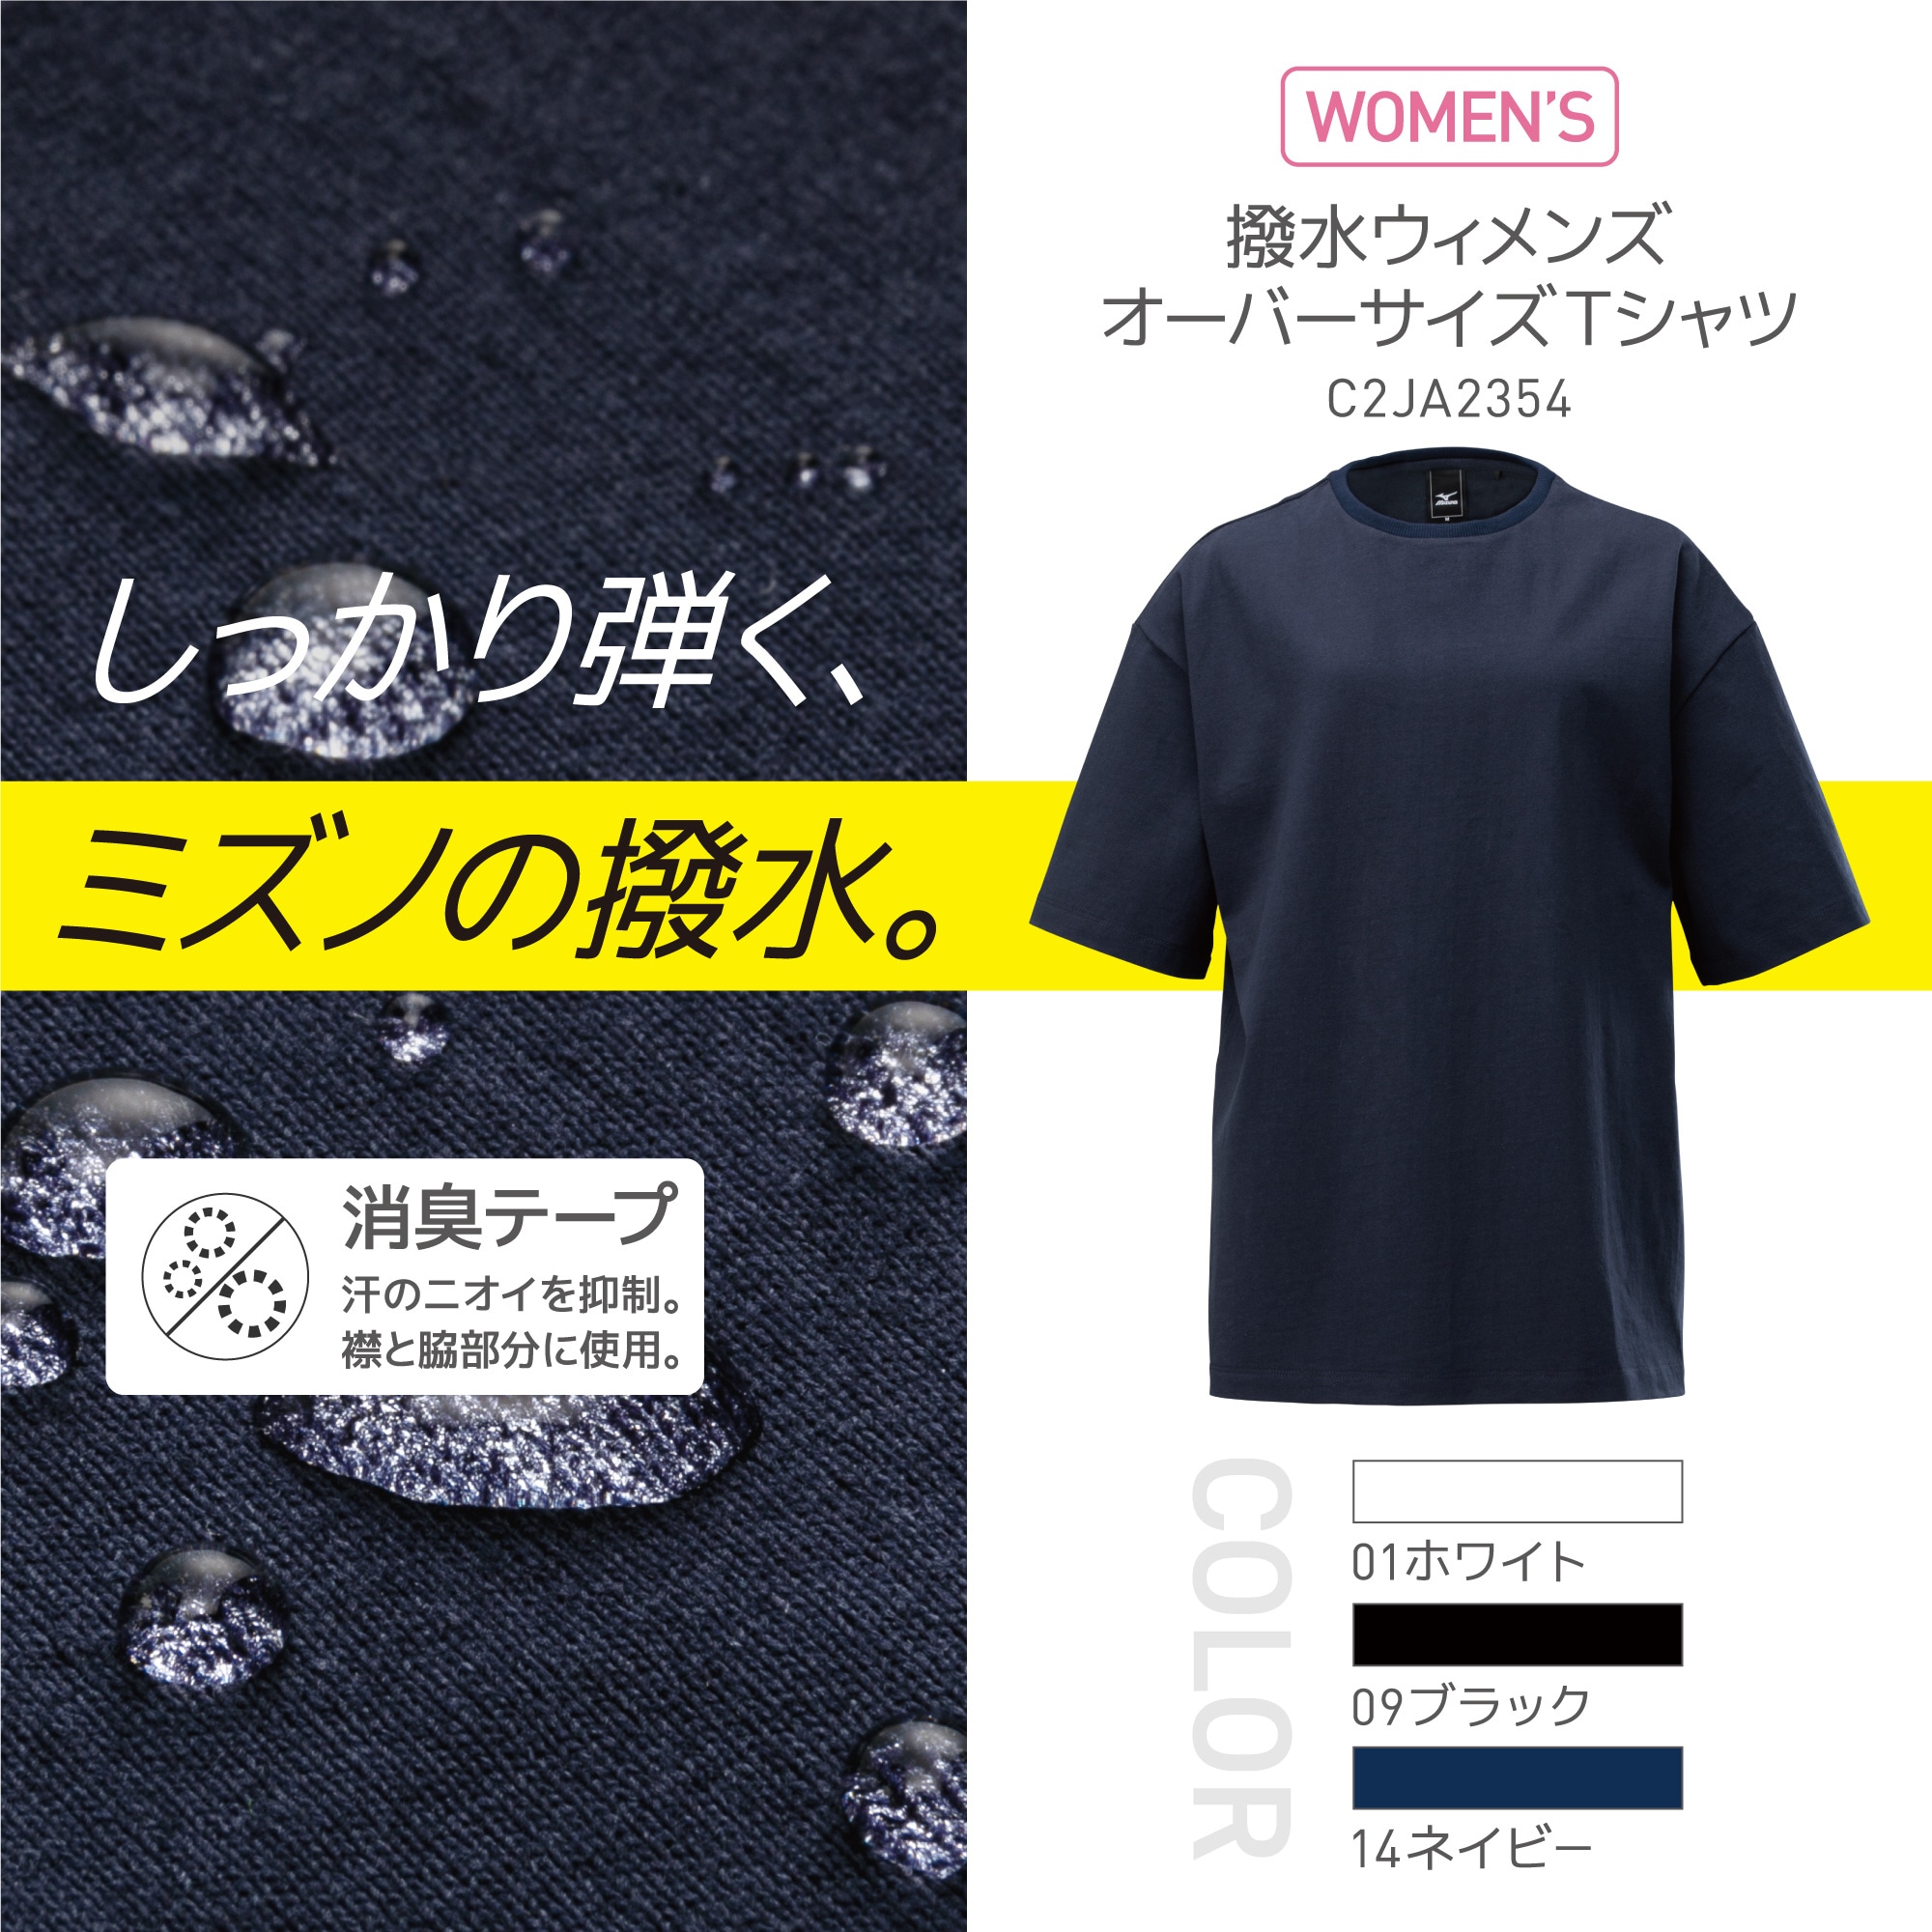 撥水Tシャツ(半袖)[ウィメンズ]|C2JA2354|ウエア|健康・日常生活品|ミズノ公式オンライン